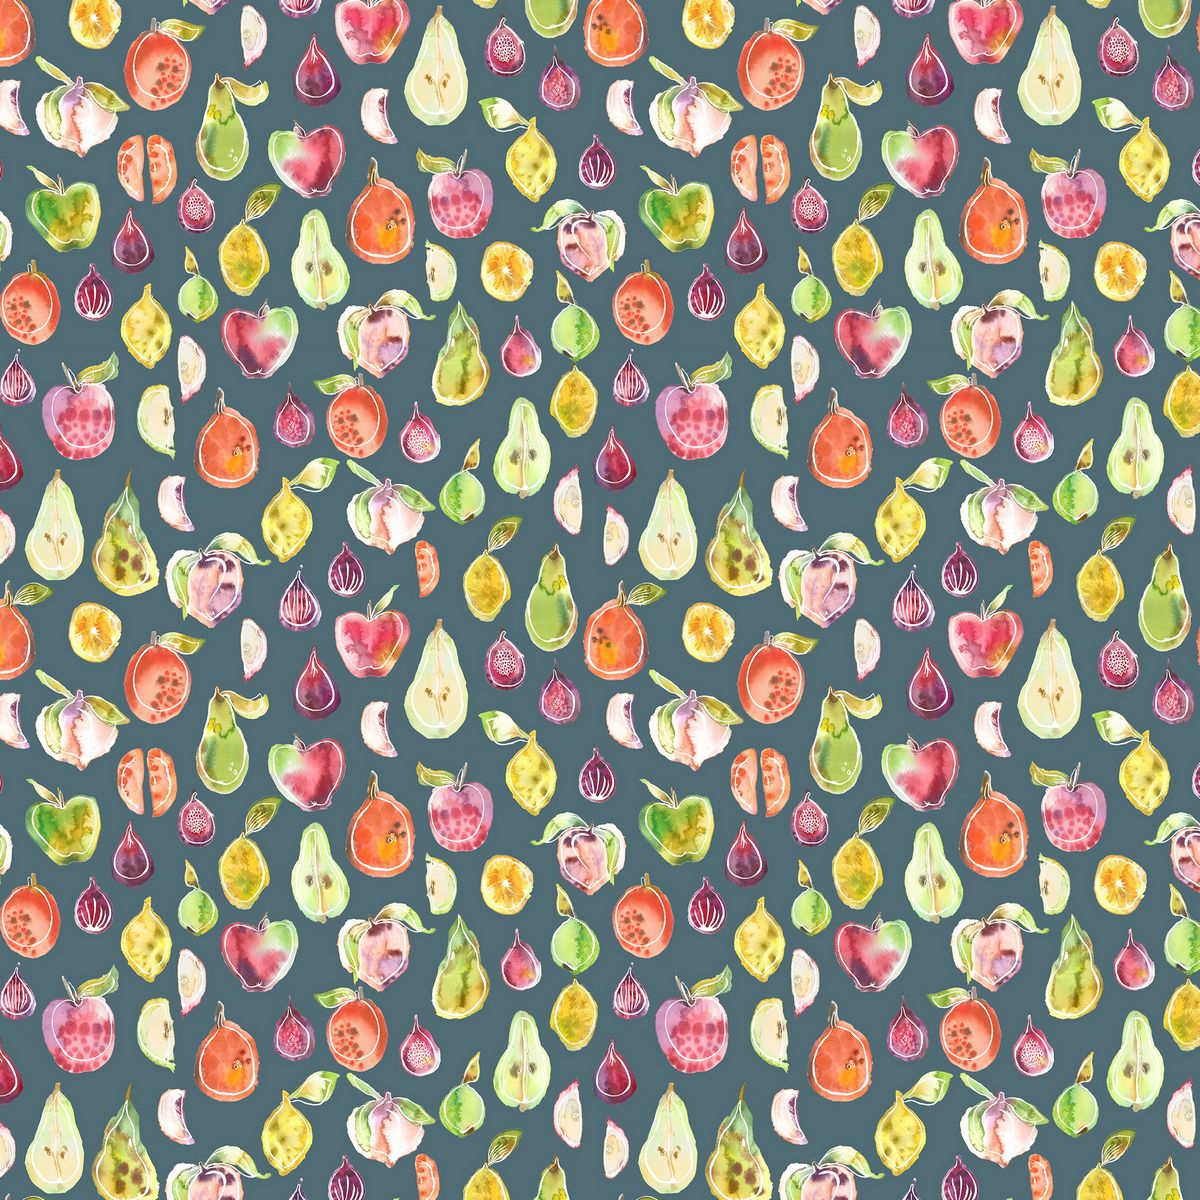 Maleko Papaya Fabric by Voyage Maison